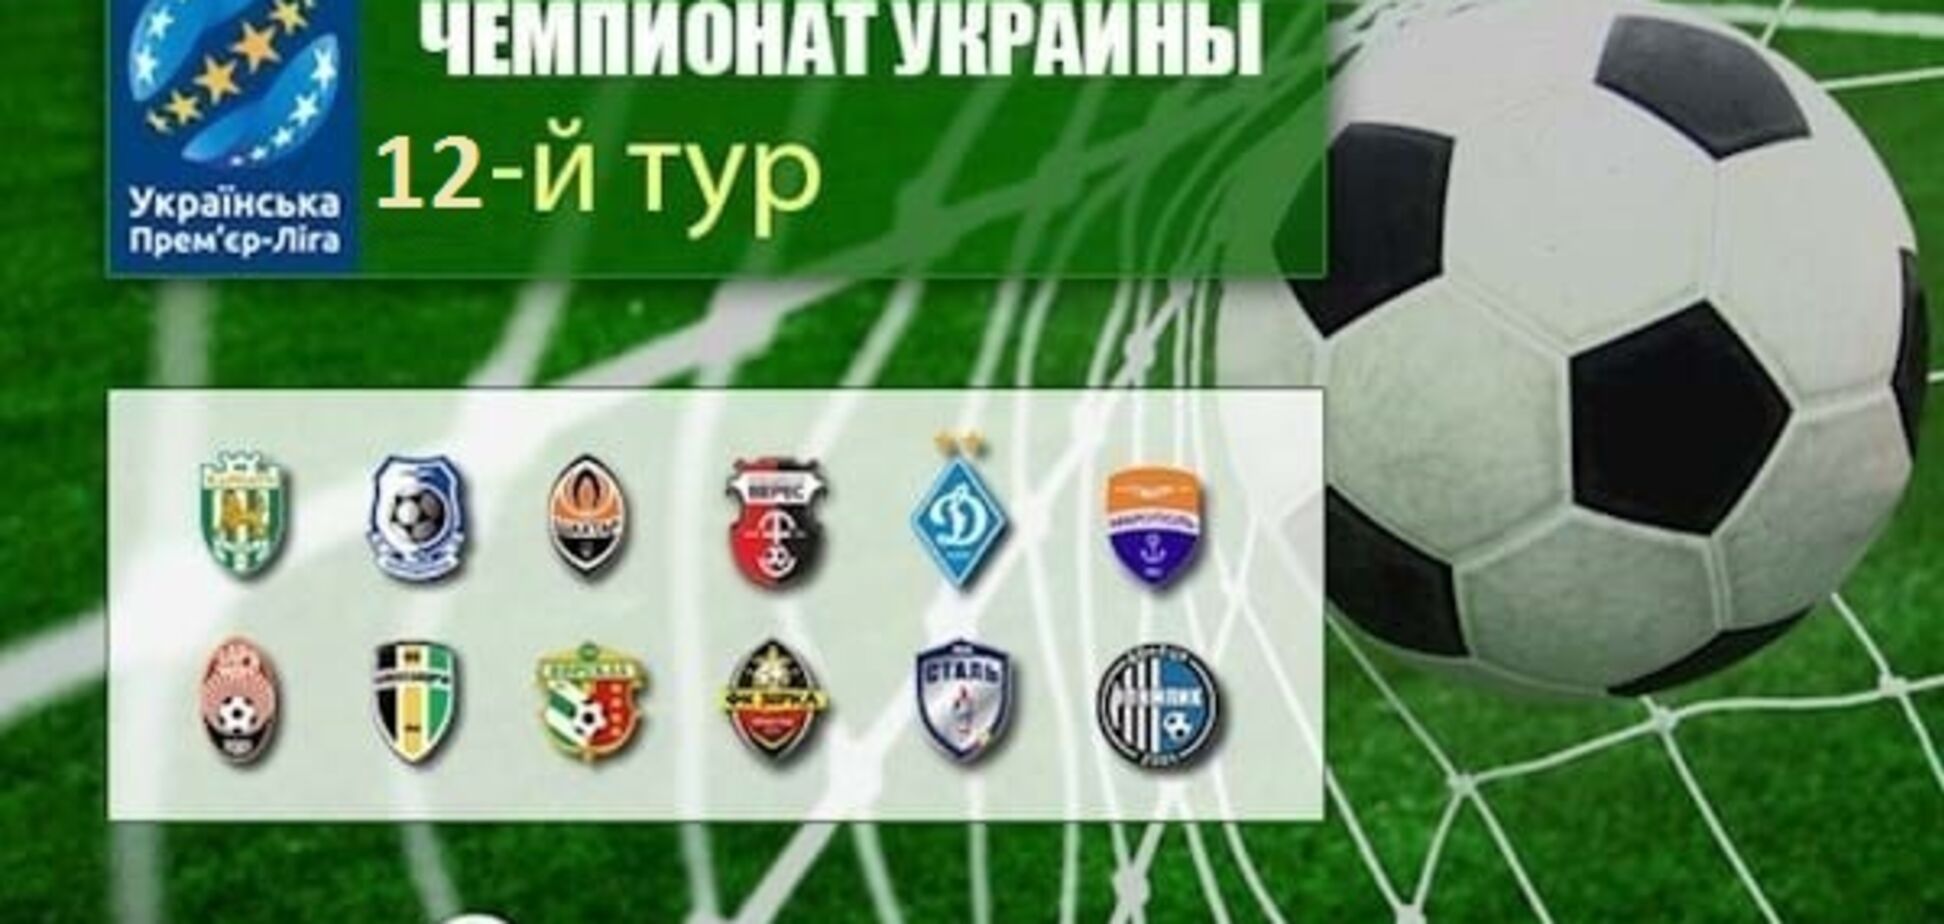 12-й тур чемпіонату України з футболу: результати, огляди, турнірна таблиця